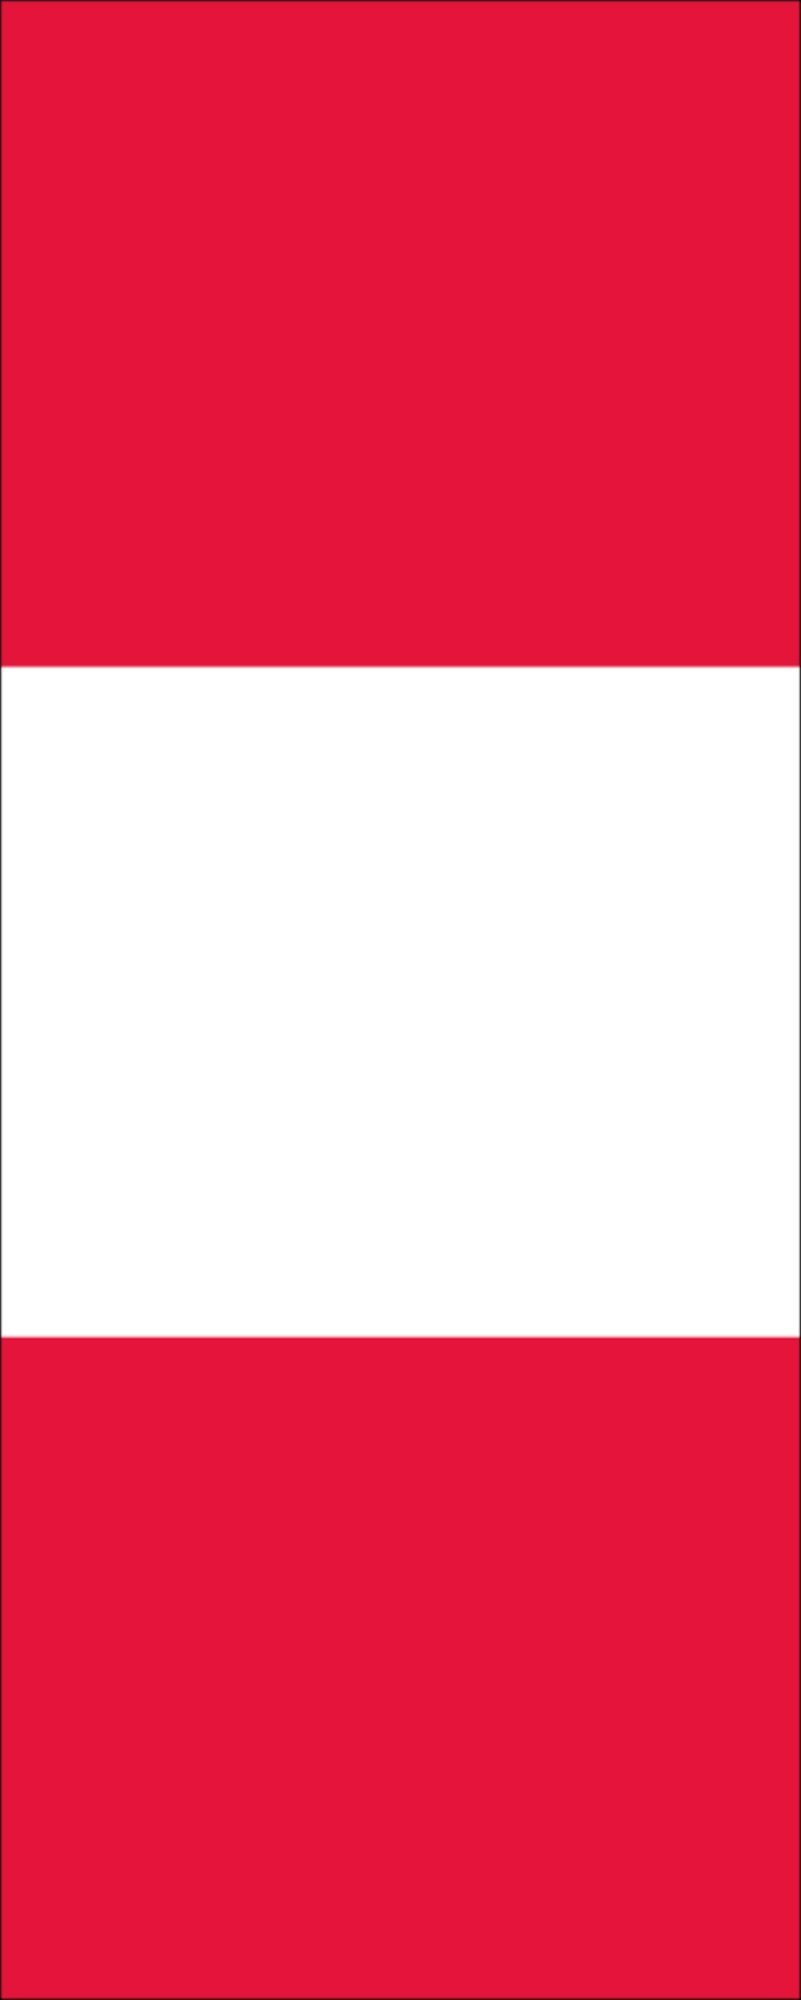 160 g/m² Peru Hochformat Flagge flaggenmeer